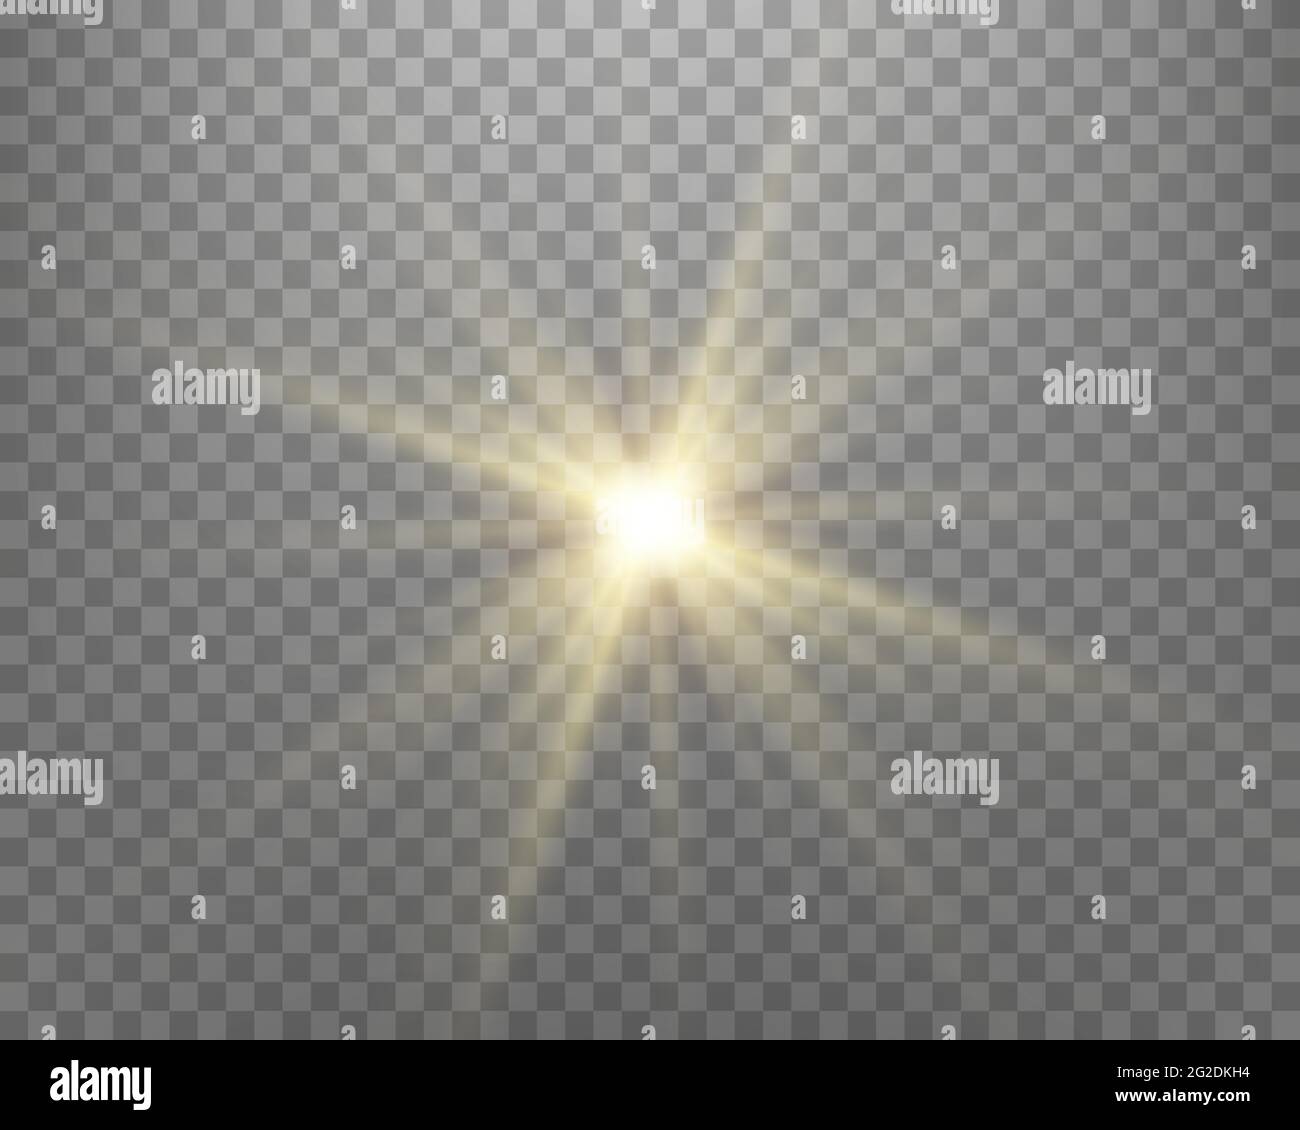 Sonnenlichtscheinblitz, Sonnenblitz mit Strahlen und Scheinwerfer. Gold glühende Explosion auf transparentem Hintergrund. Vektorgrafik. Stock Vektor